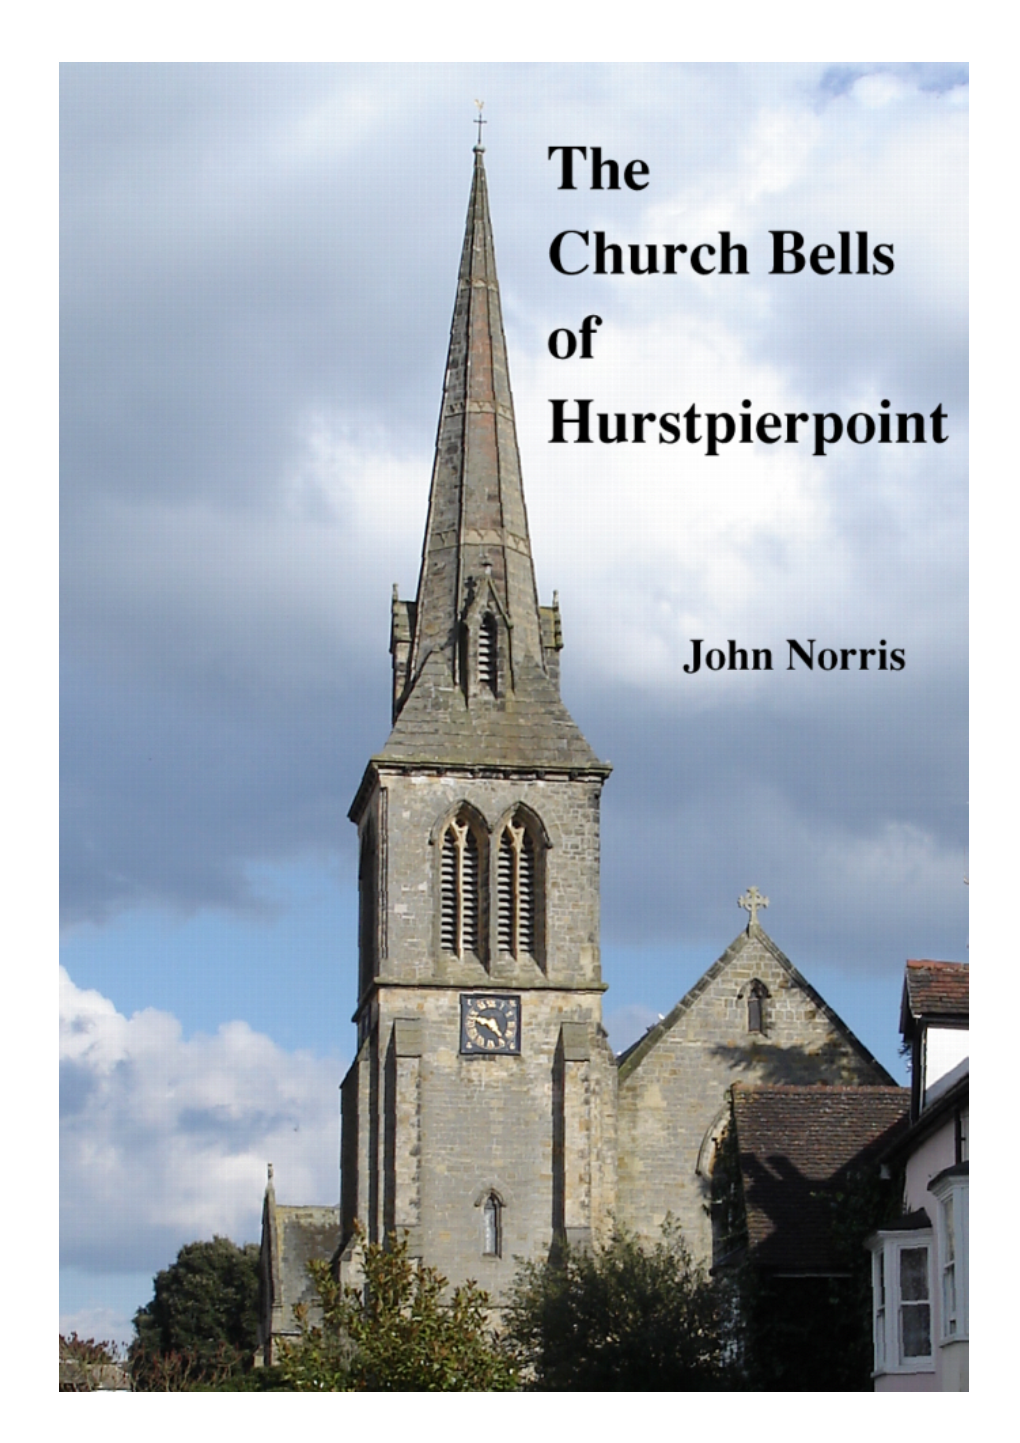 The Church Bells of Hurstpierpoint